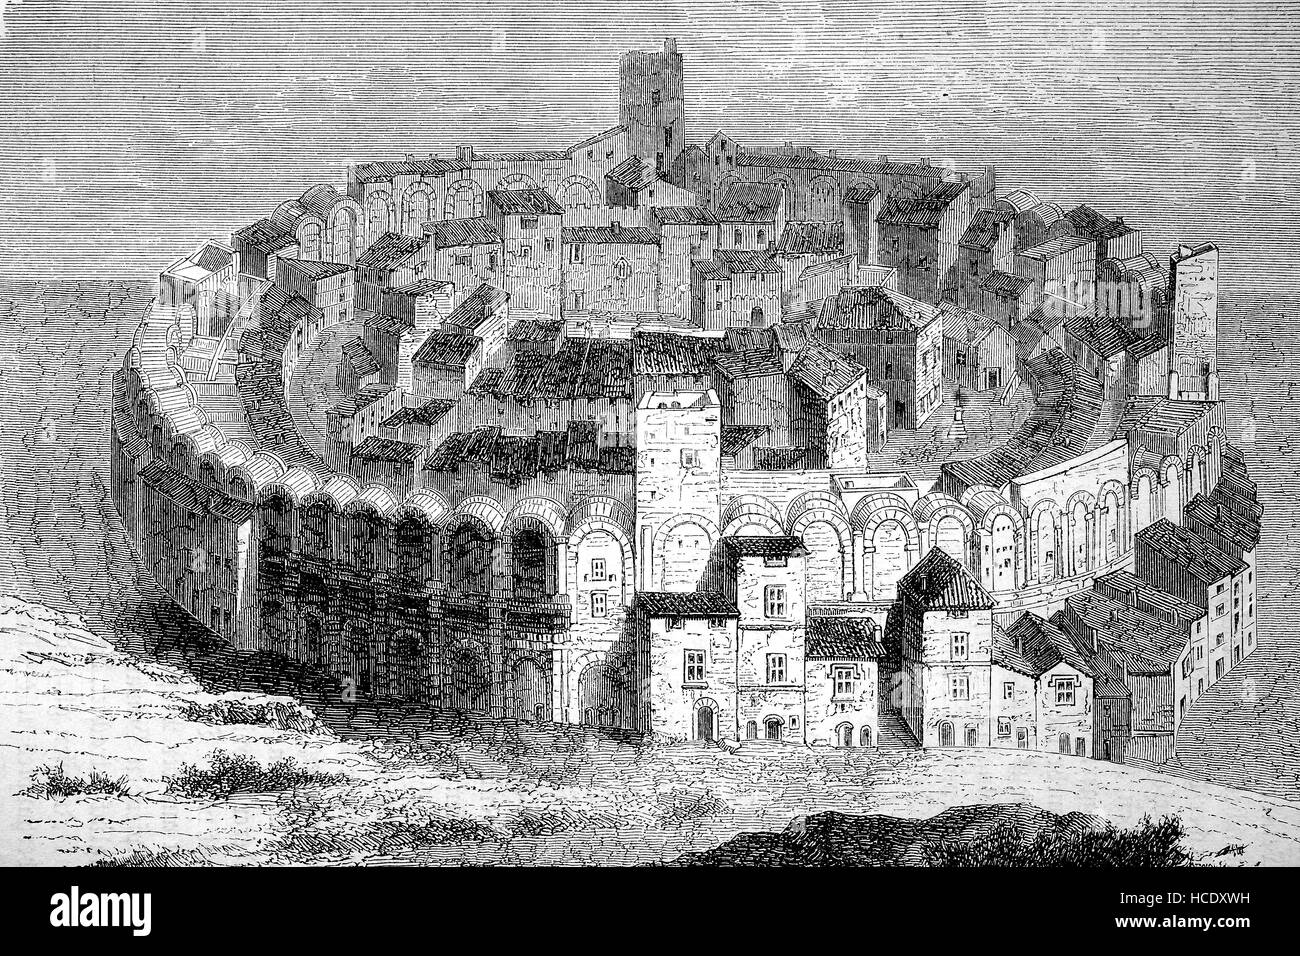 die alten römischen Arena, Amphitheater von Arles, Frankreich, die Geschichte des antiken Rom, Römisches Reich, Italien Stockfoto